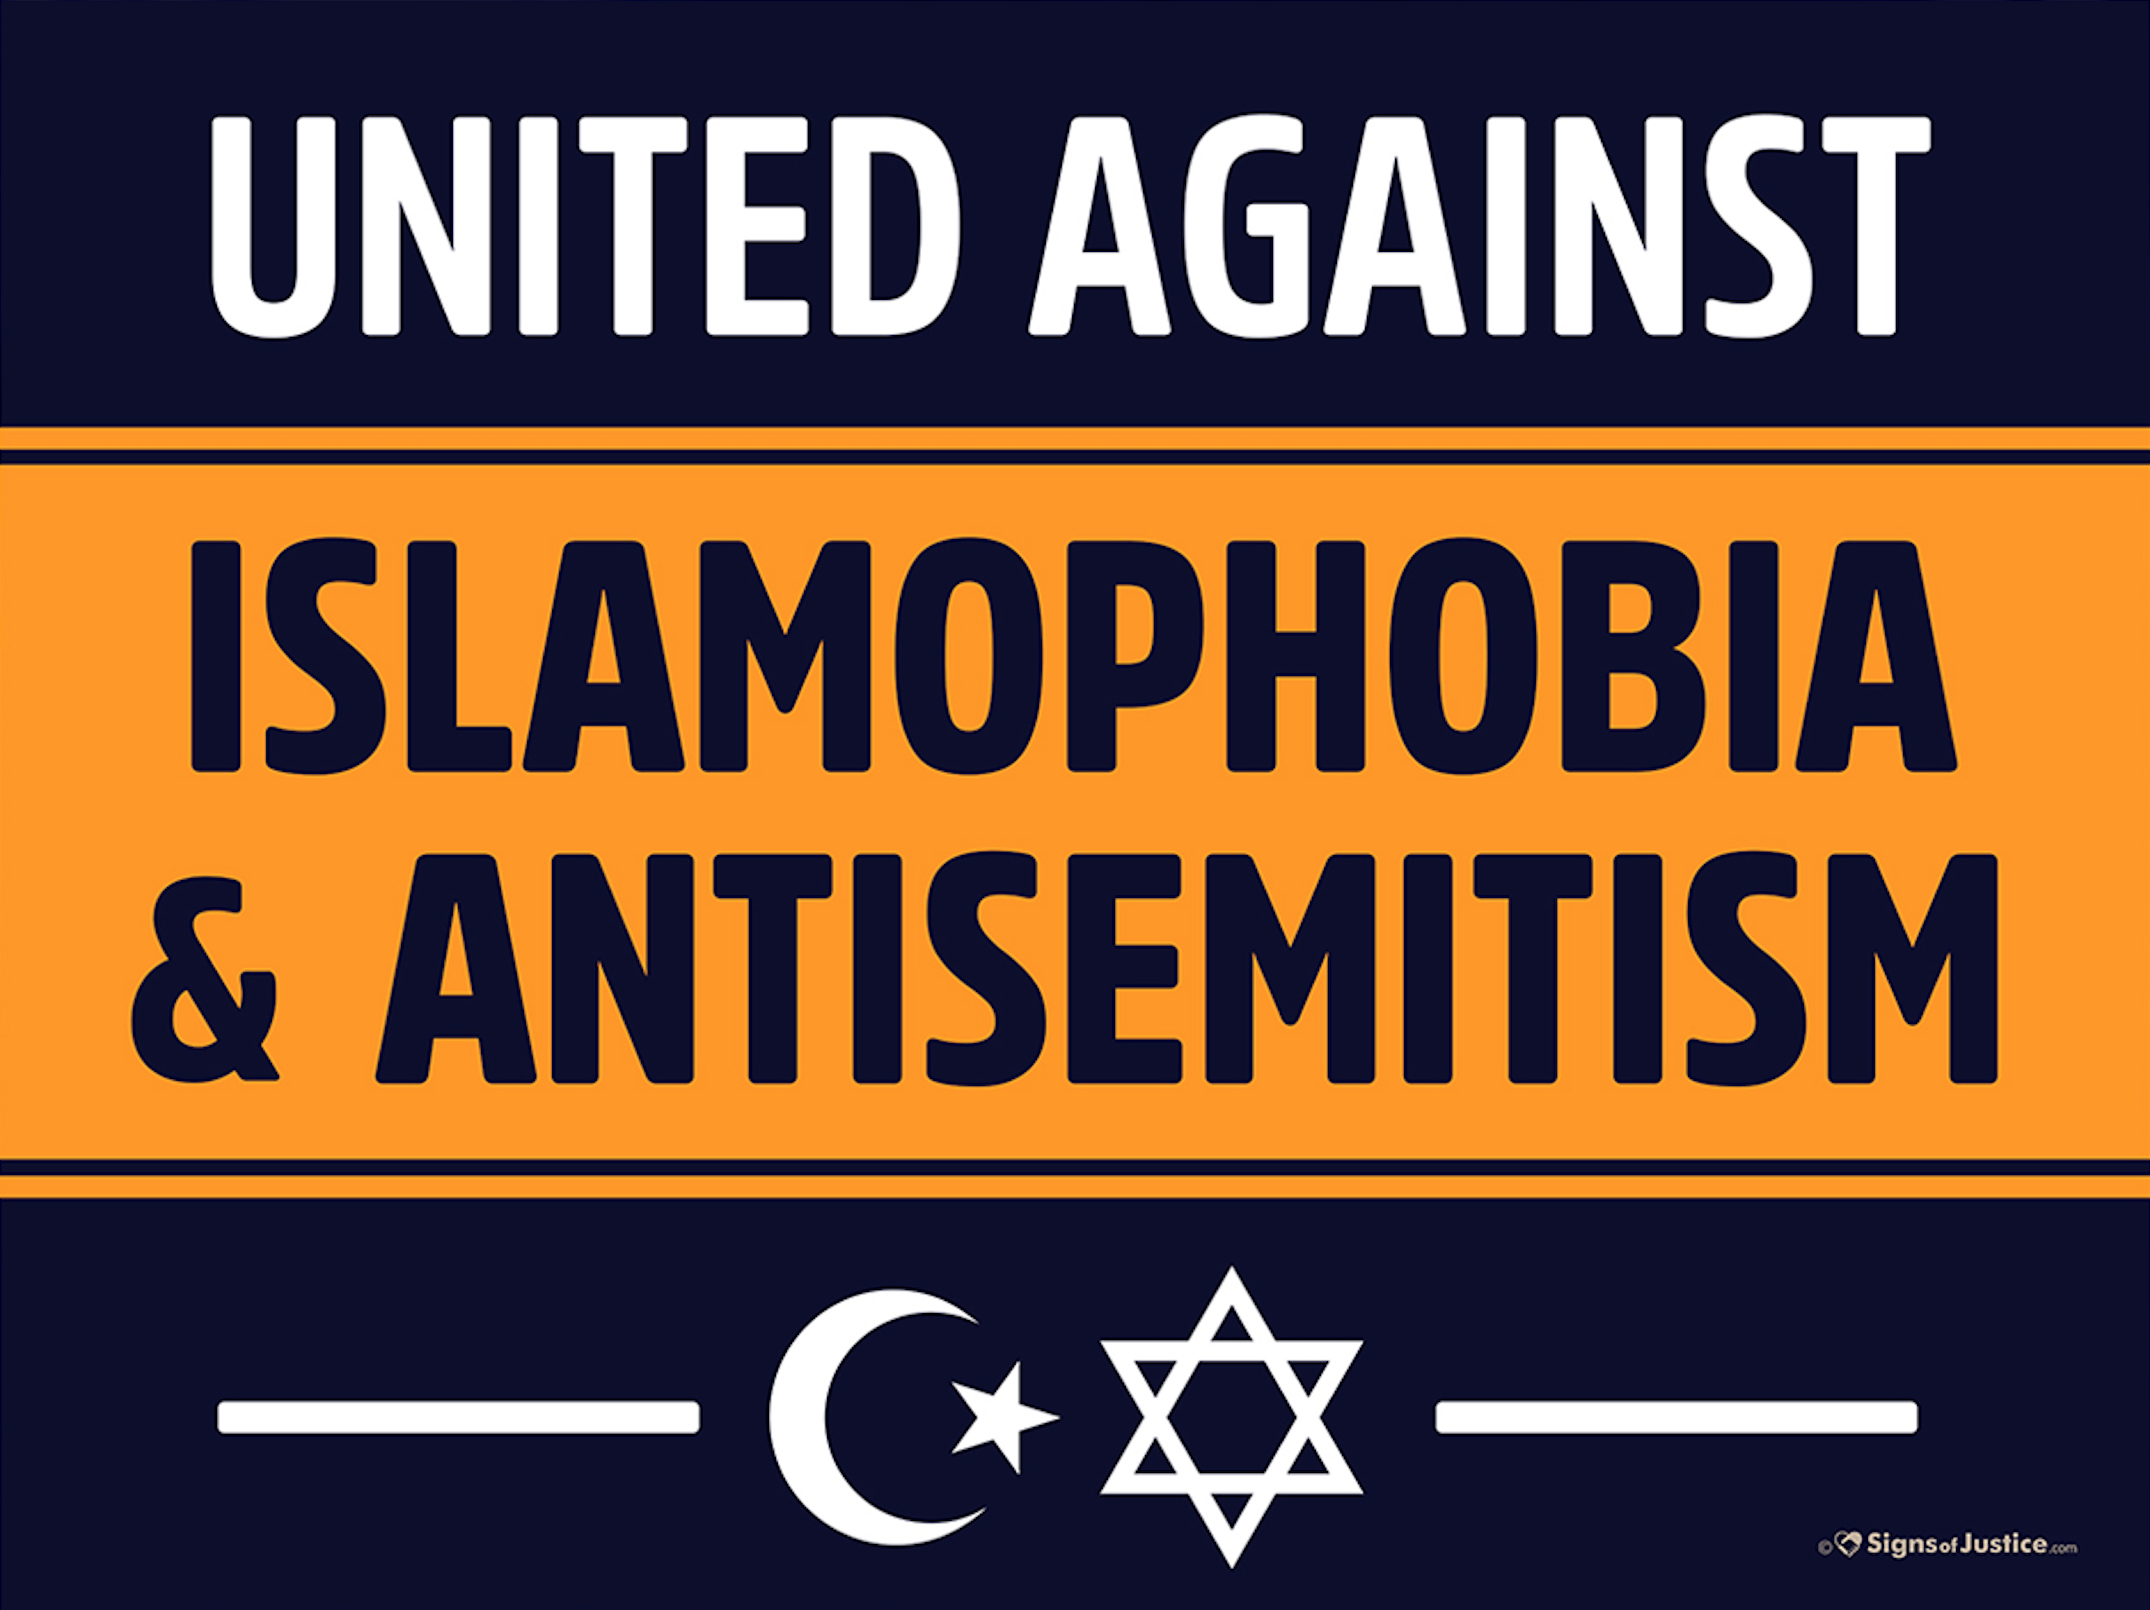 United Against Islamophobia & Antisemitism